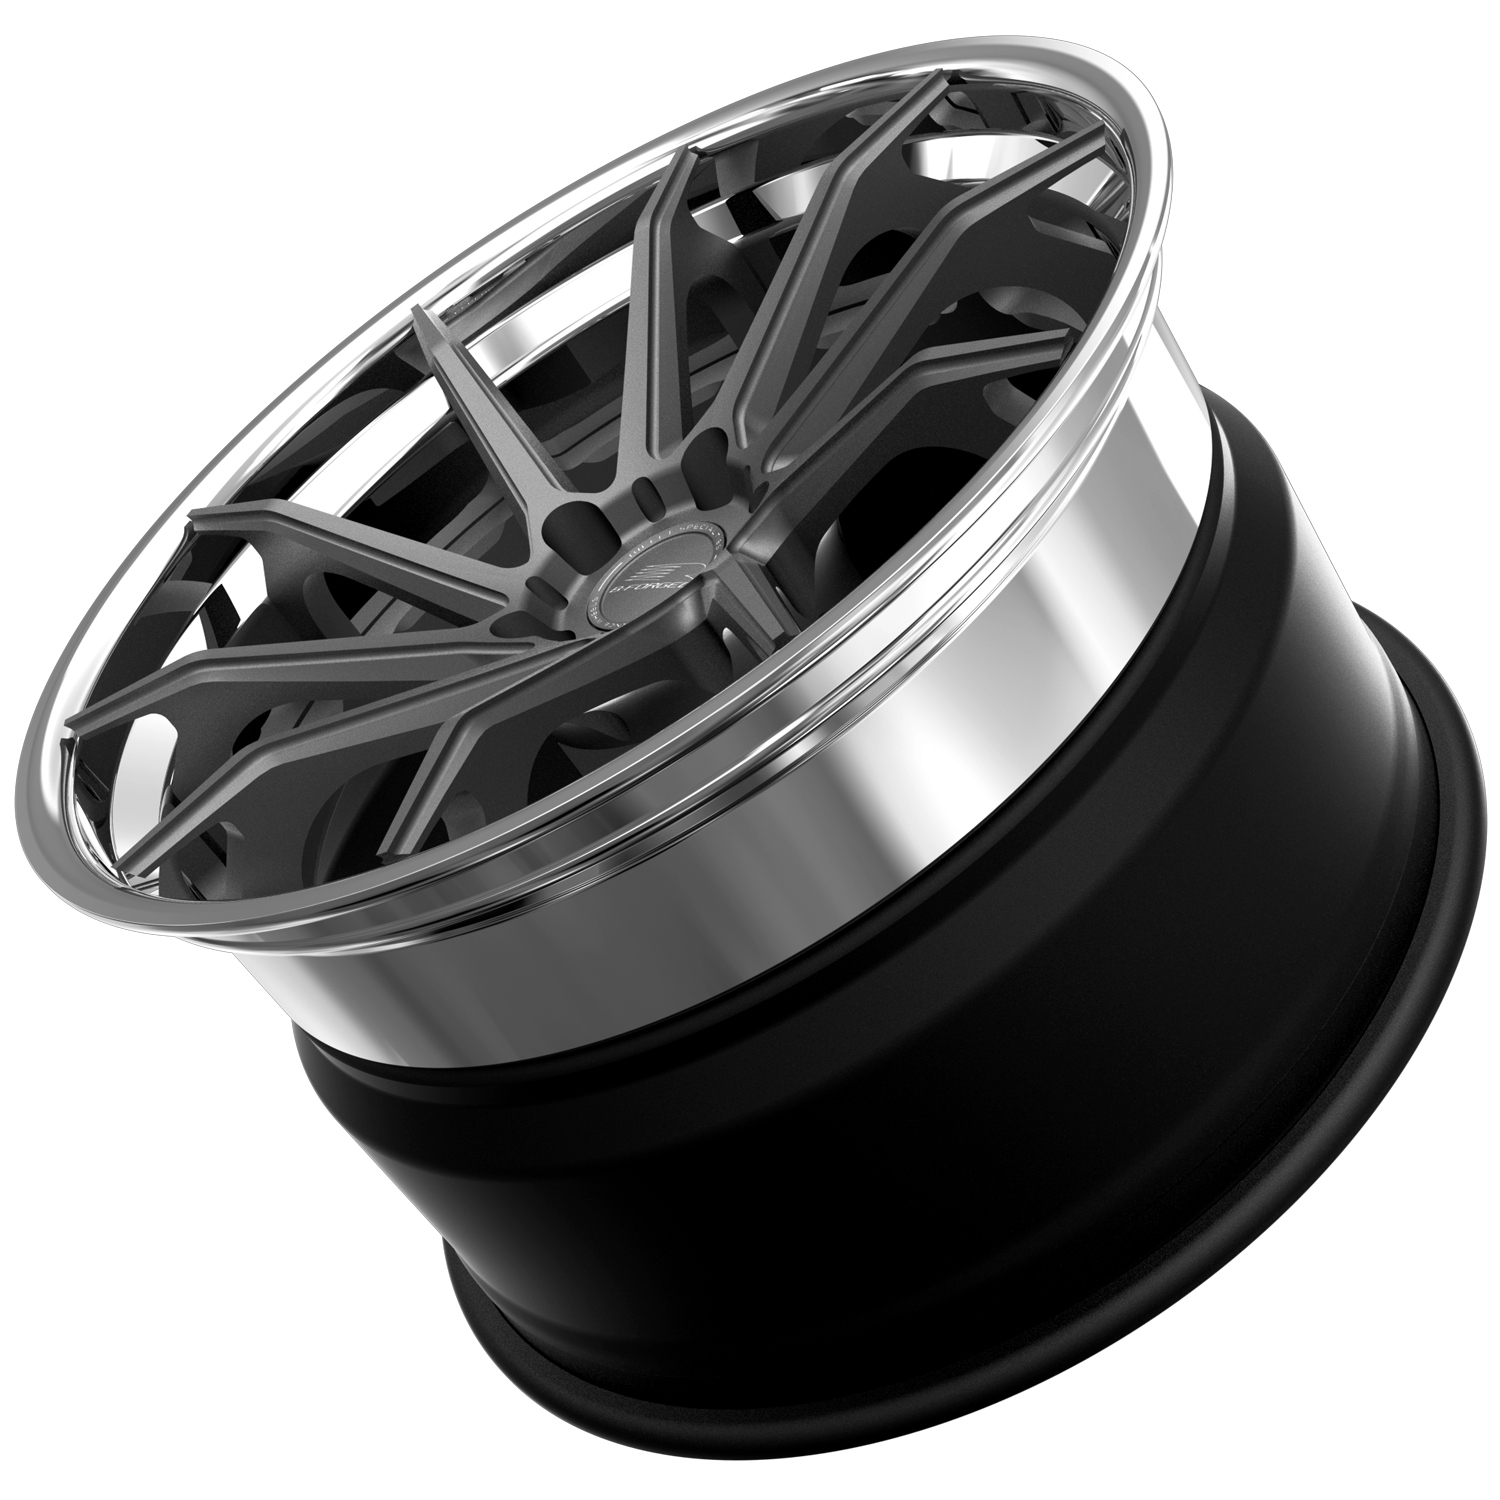 B-Forged wheels 791 SXL